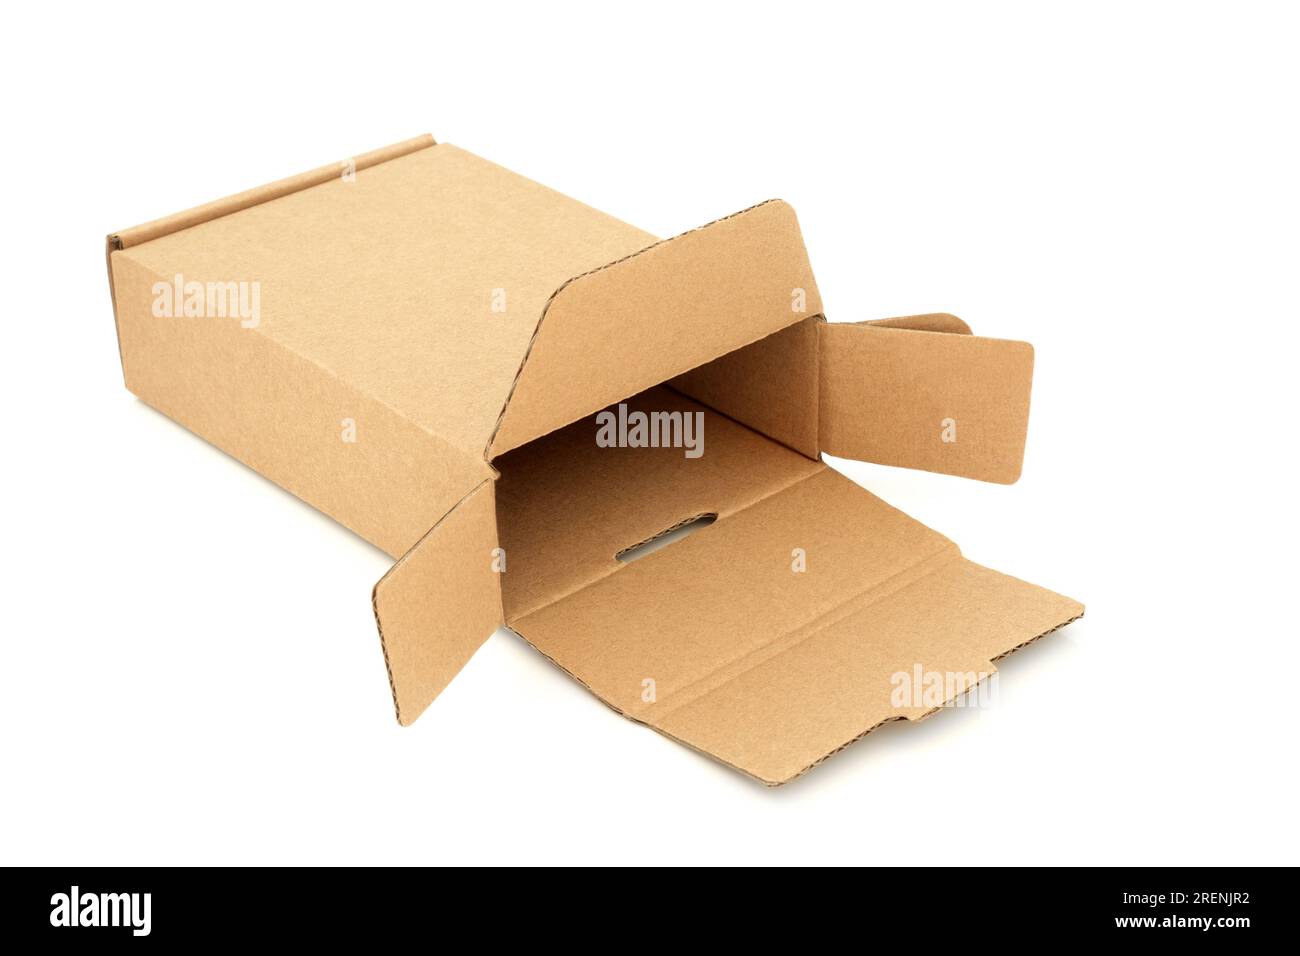 Schlanke rechteckige Lieferverpackung aus braunem Karton auf weißem Hintergrund. Umweltfreundliches wiederverwendbares Material für Zustellpakete. Stockfoto